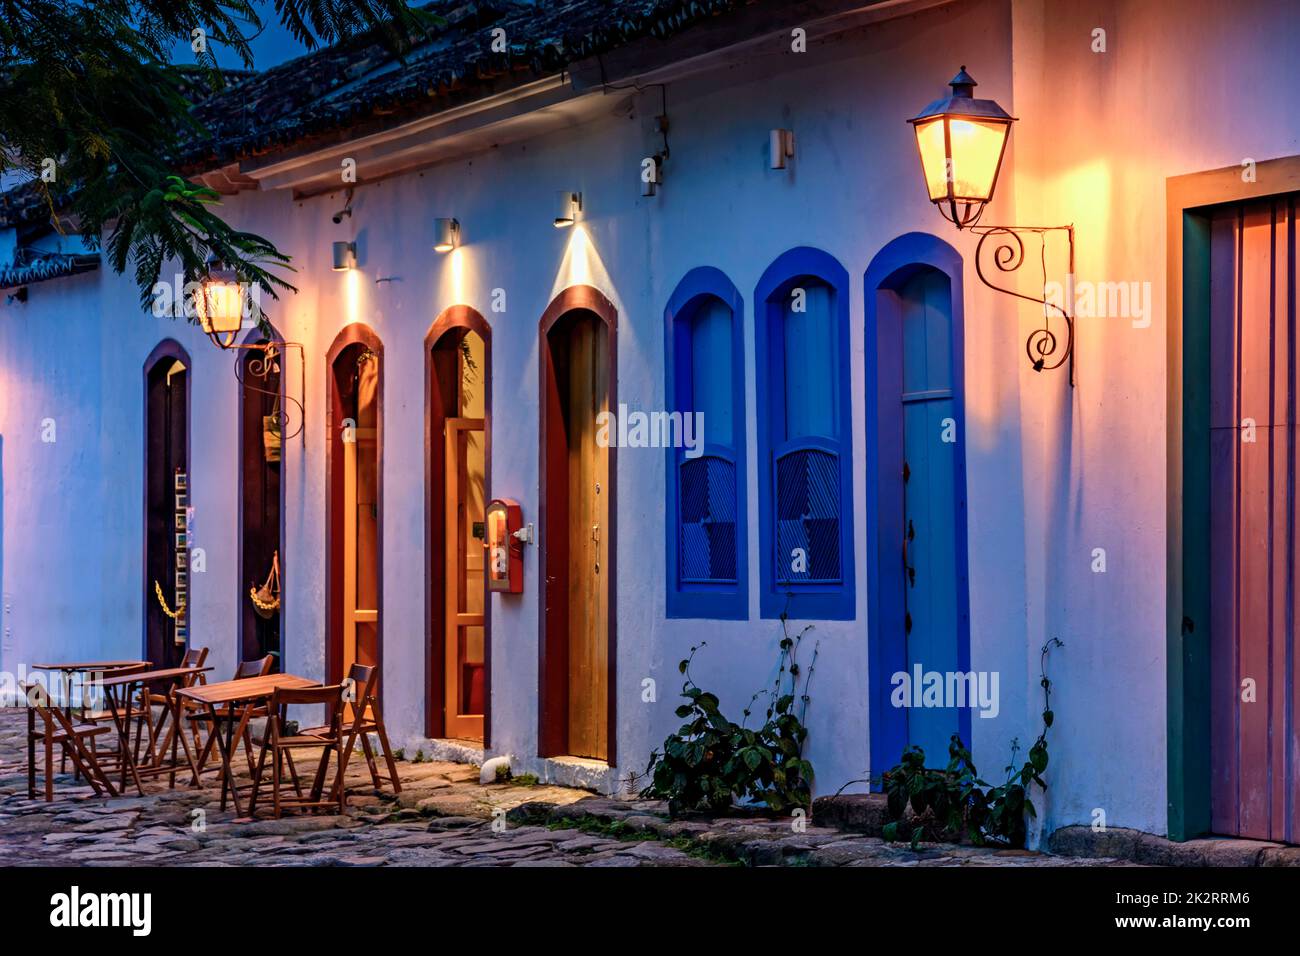 Las calles y casas de estilo colonial iluminan por la noche en la ciudad de Paraty Foto de stock